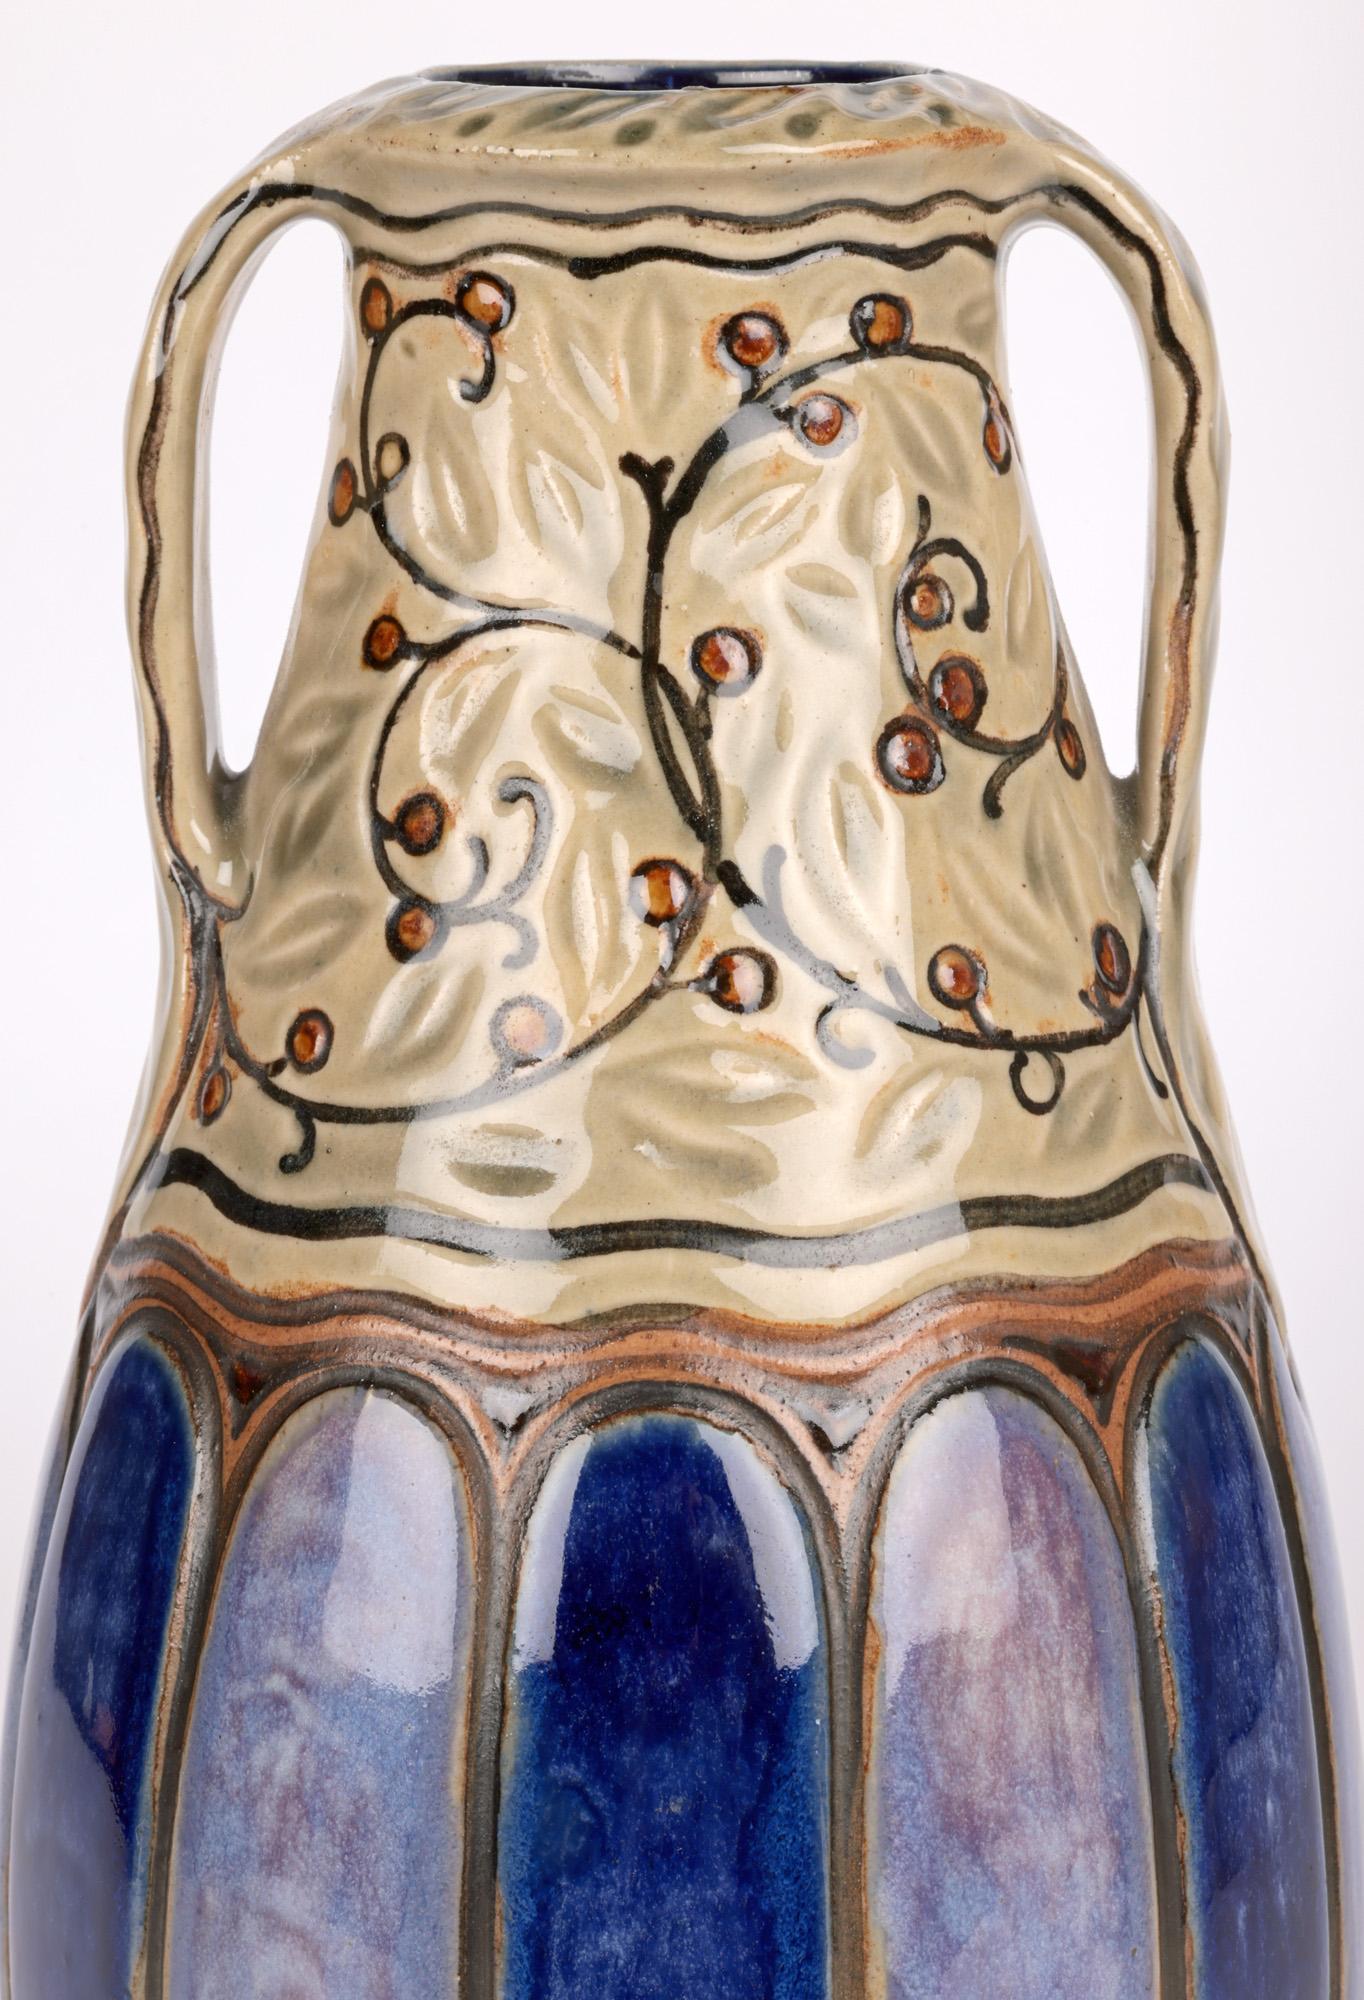 Un élégant vase Doulton Artistics art déco à deux anses, réalisé par l'artiste renommé William Rowe et datant d'environ 1918. Le vase en grès est de forme bulbeuse et repose sur un étroit pied rond non émaillé. La partie inférieure du corps est